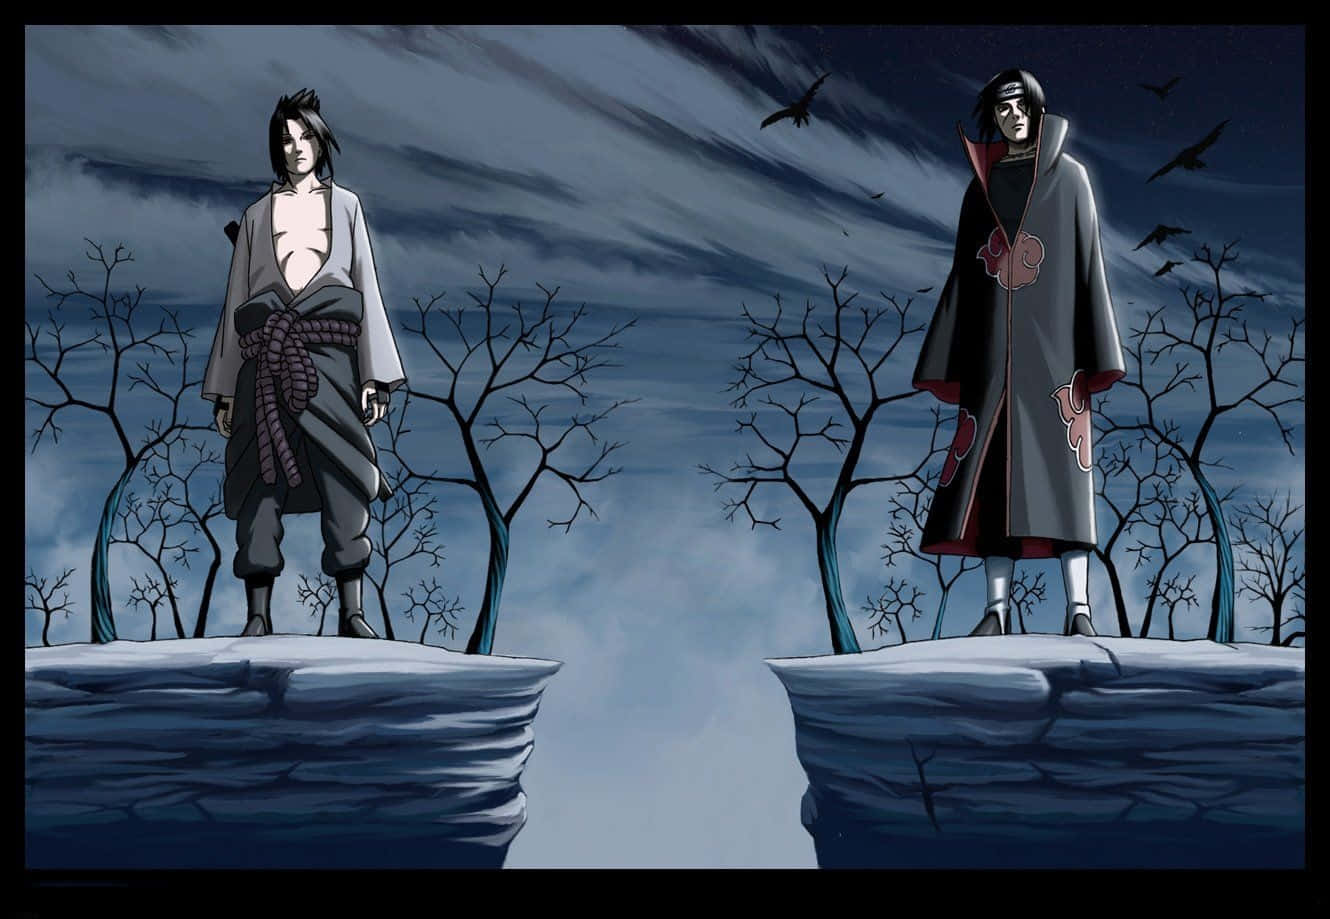 Sasukeund Itachi Seite An Seite Wallpaper